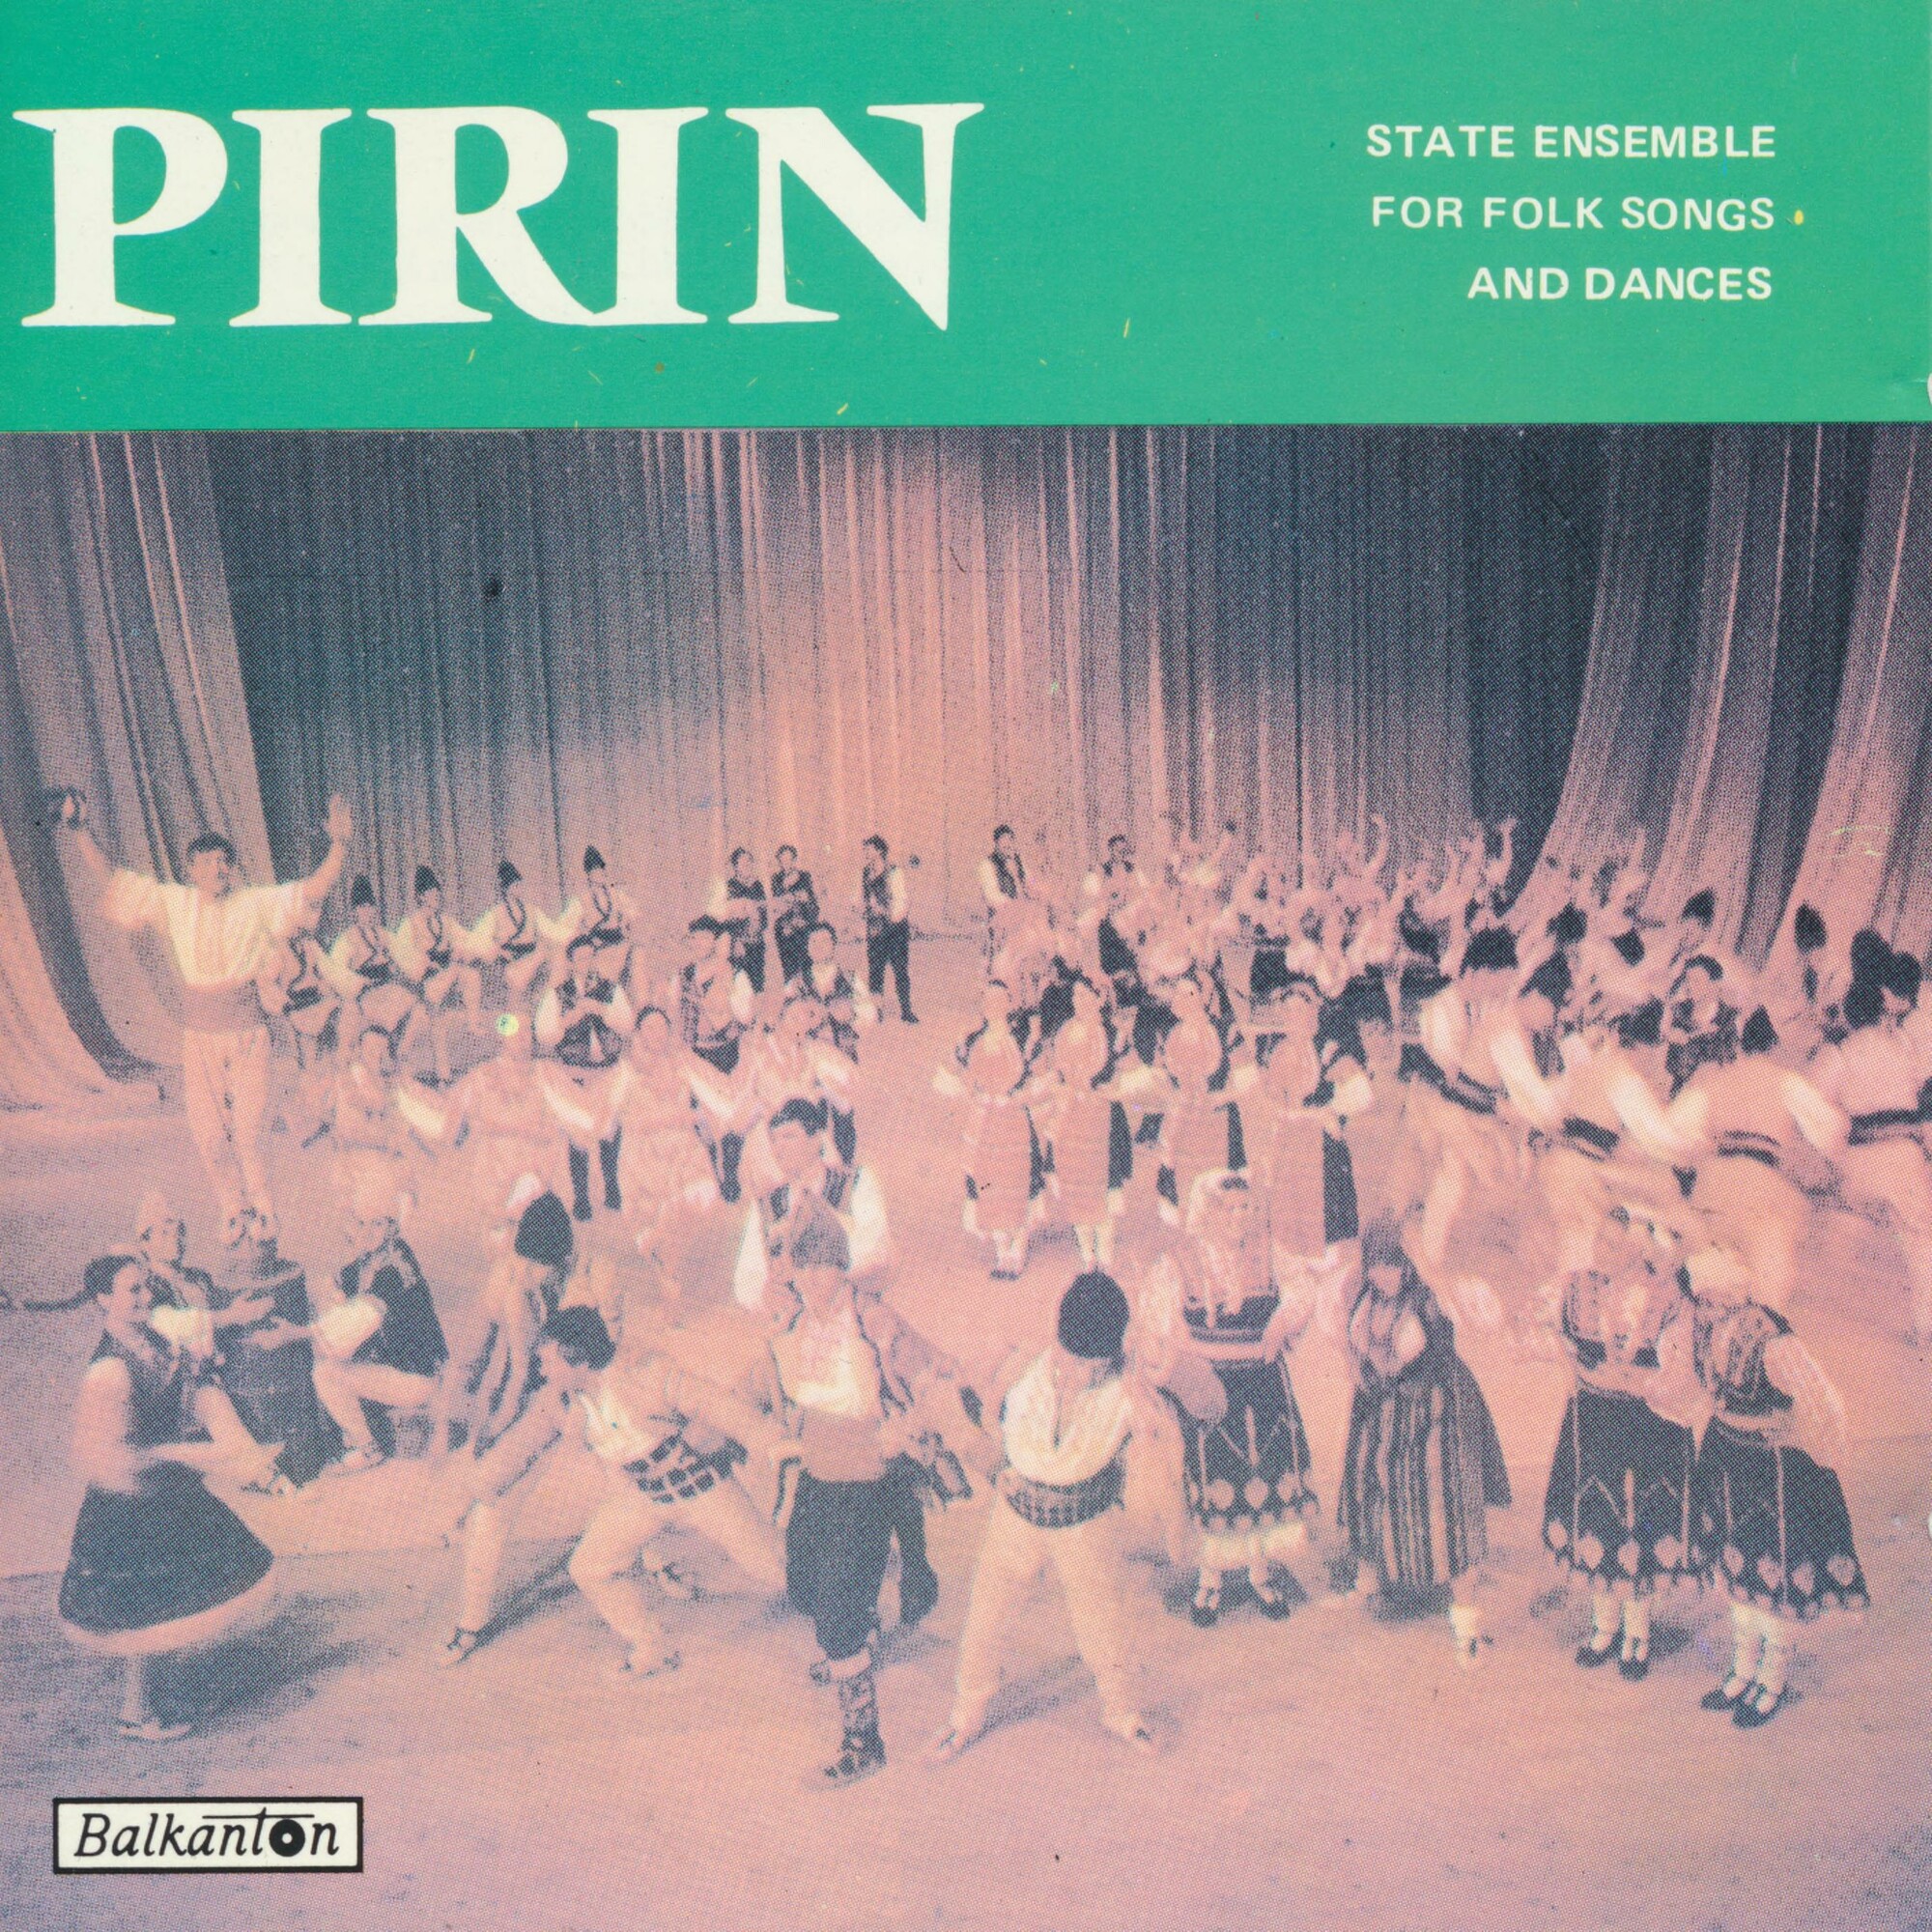 Pirin State Ensemble for Folk Songs and Dances